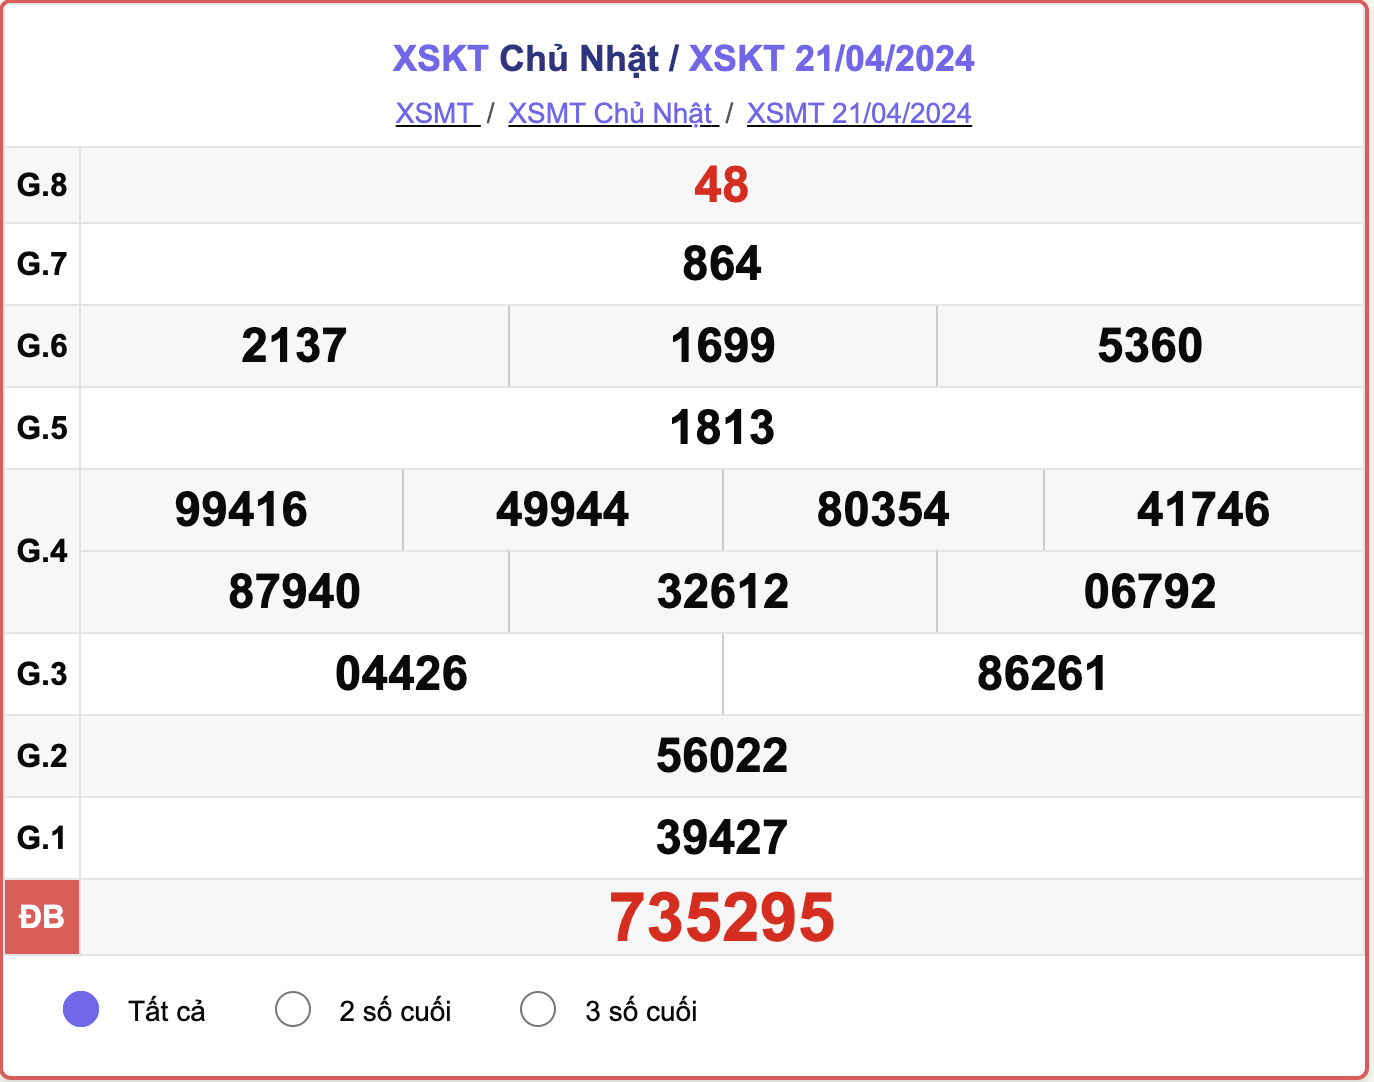 XSKT Chủ nhật, kết quả xổ số Kon Tum ngày 21/4/2024.